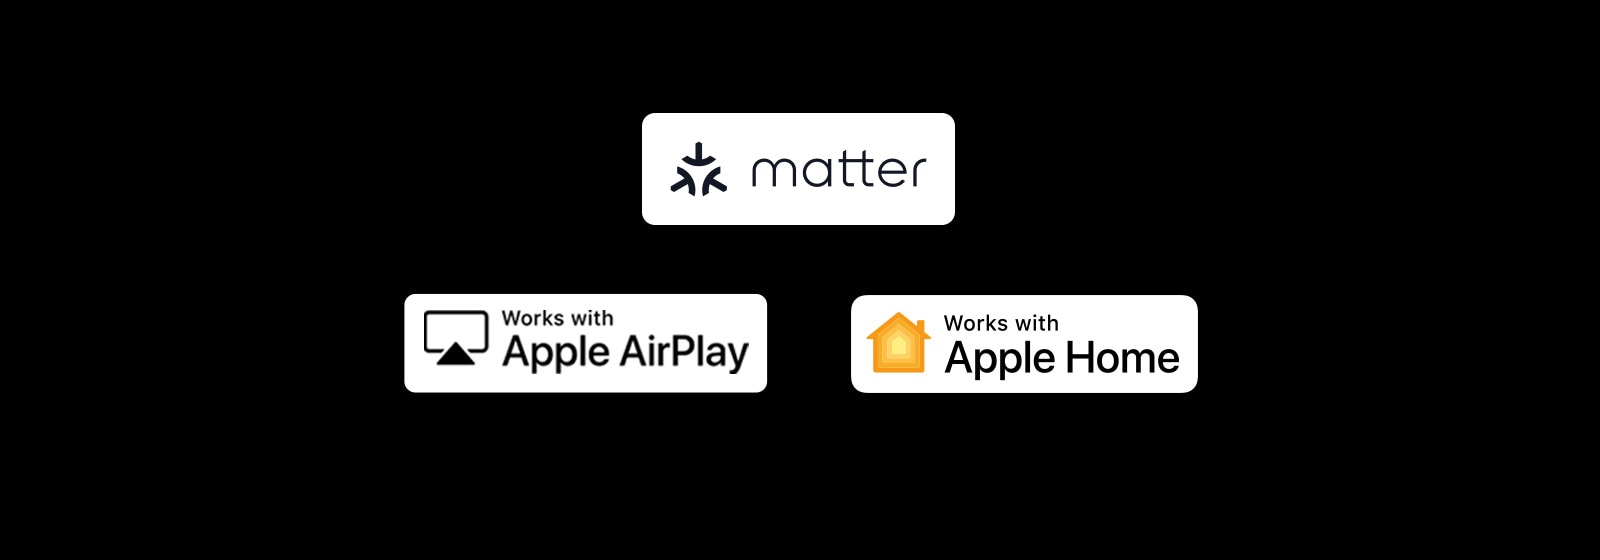 Logotip Apple AirPlay A deluje z logotipom Apple Home A deluje z logotipom Matter